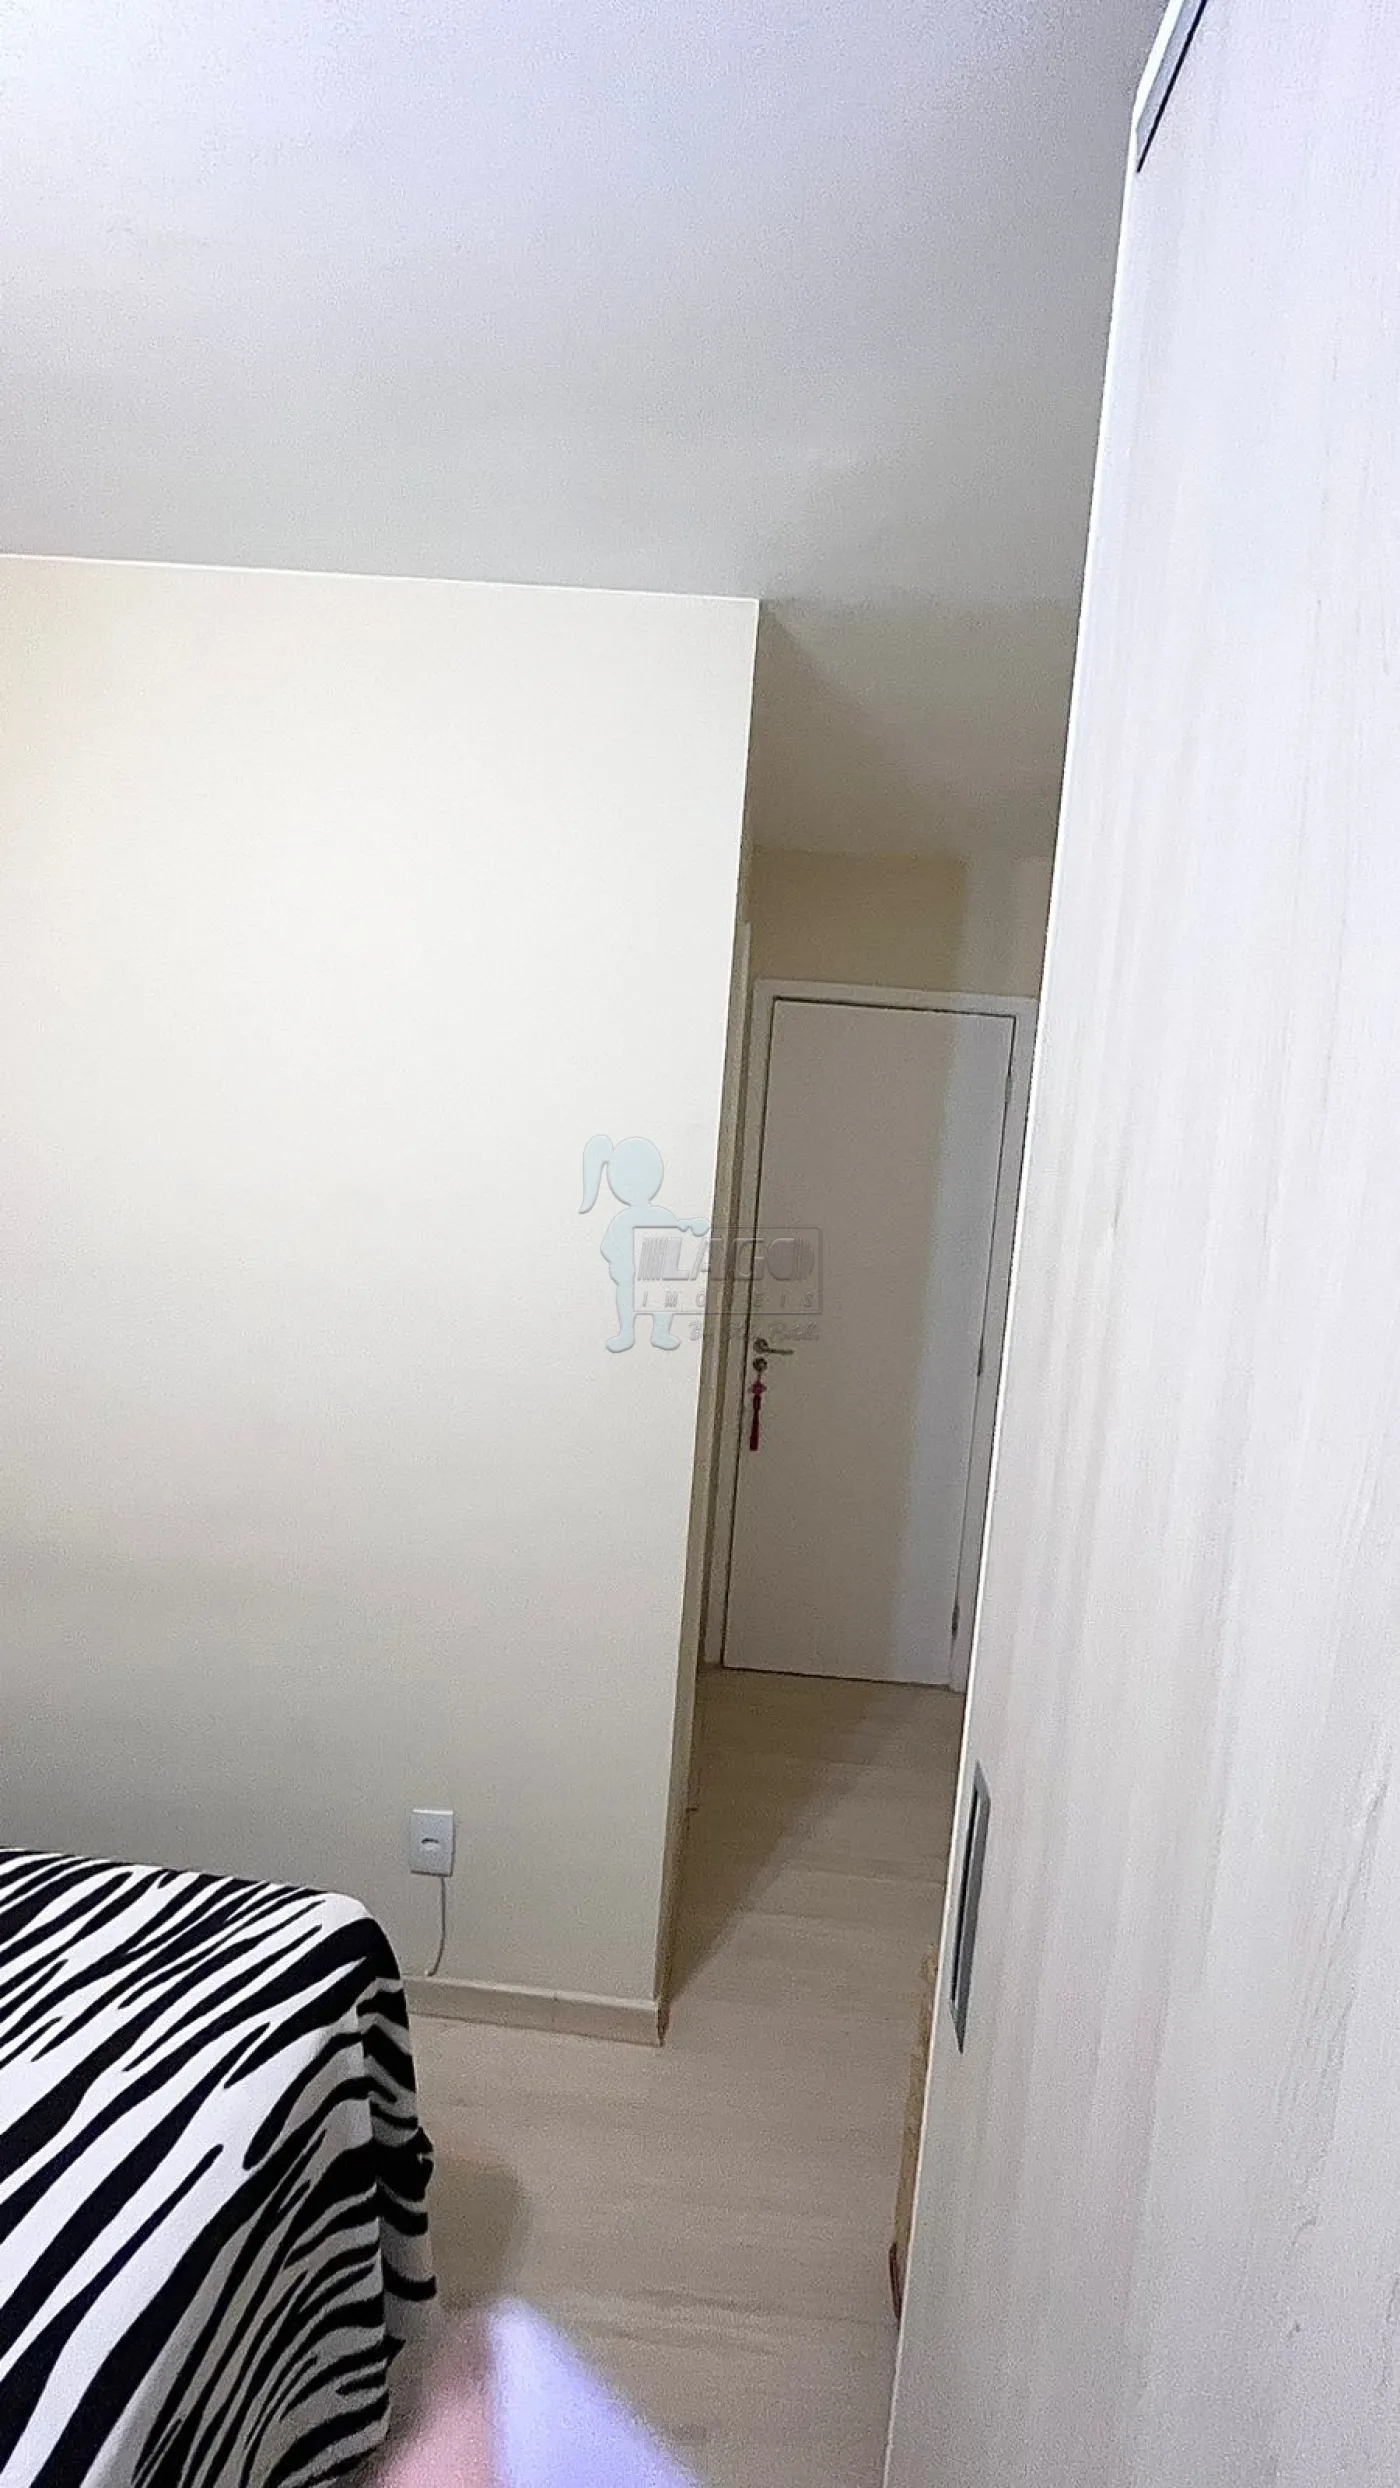 Comprar Apartamento / Padrão em Ribeirão Preto R$ 240.000,00 - Foto 12